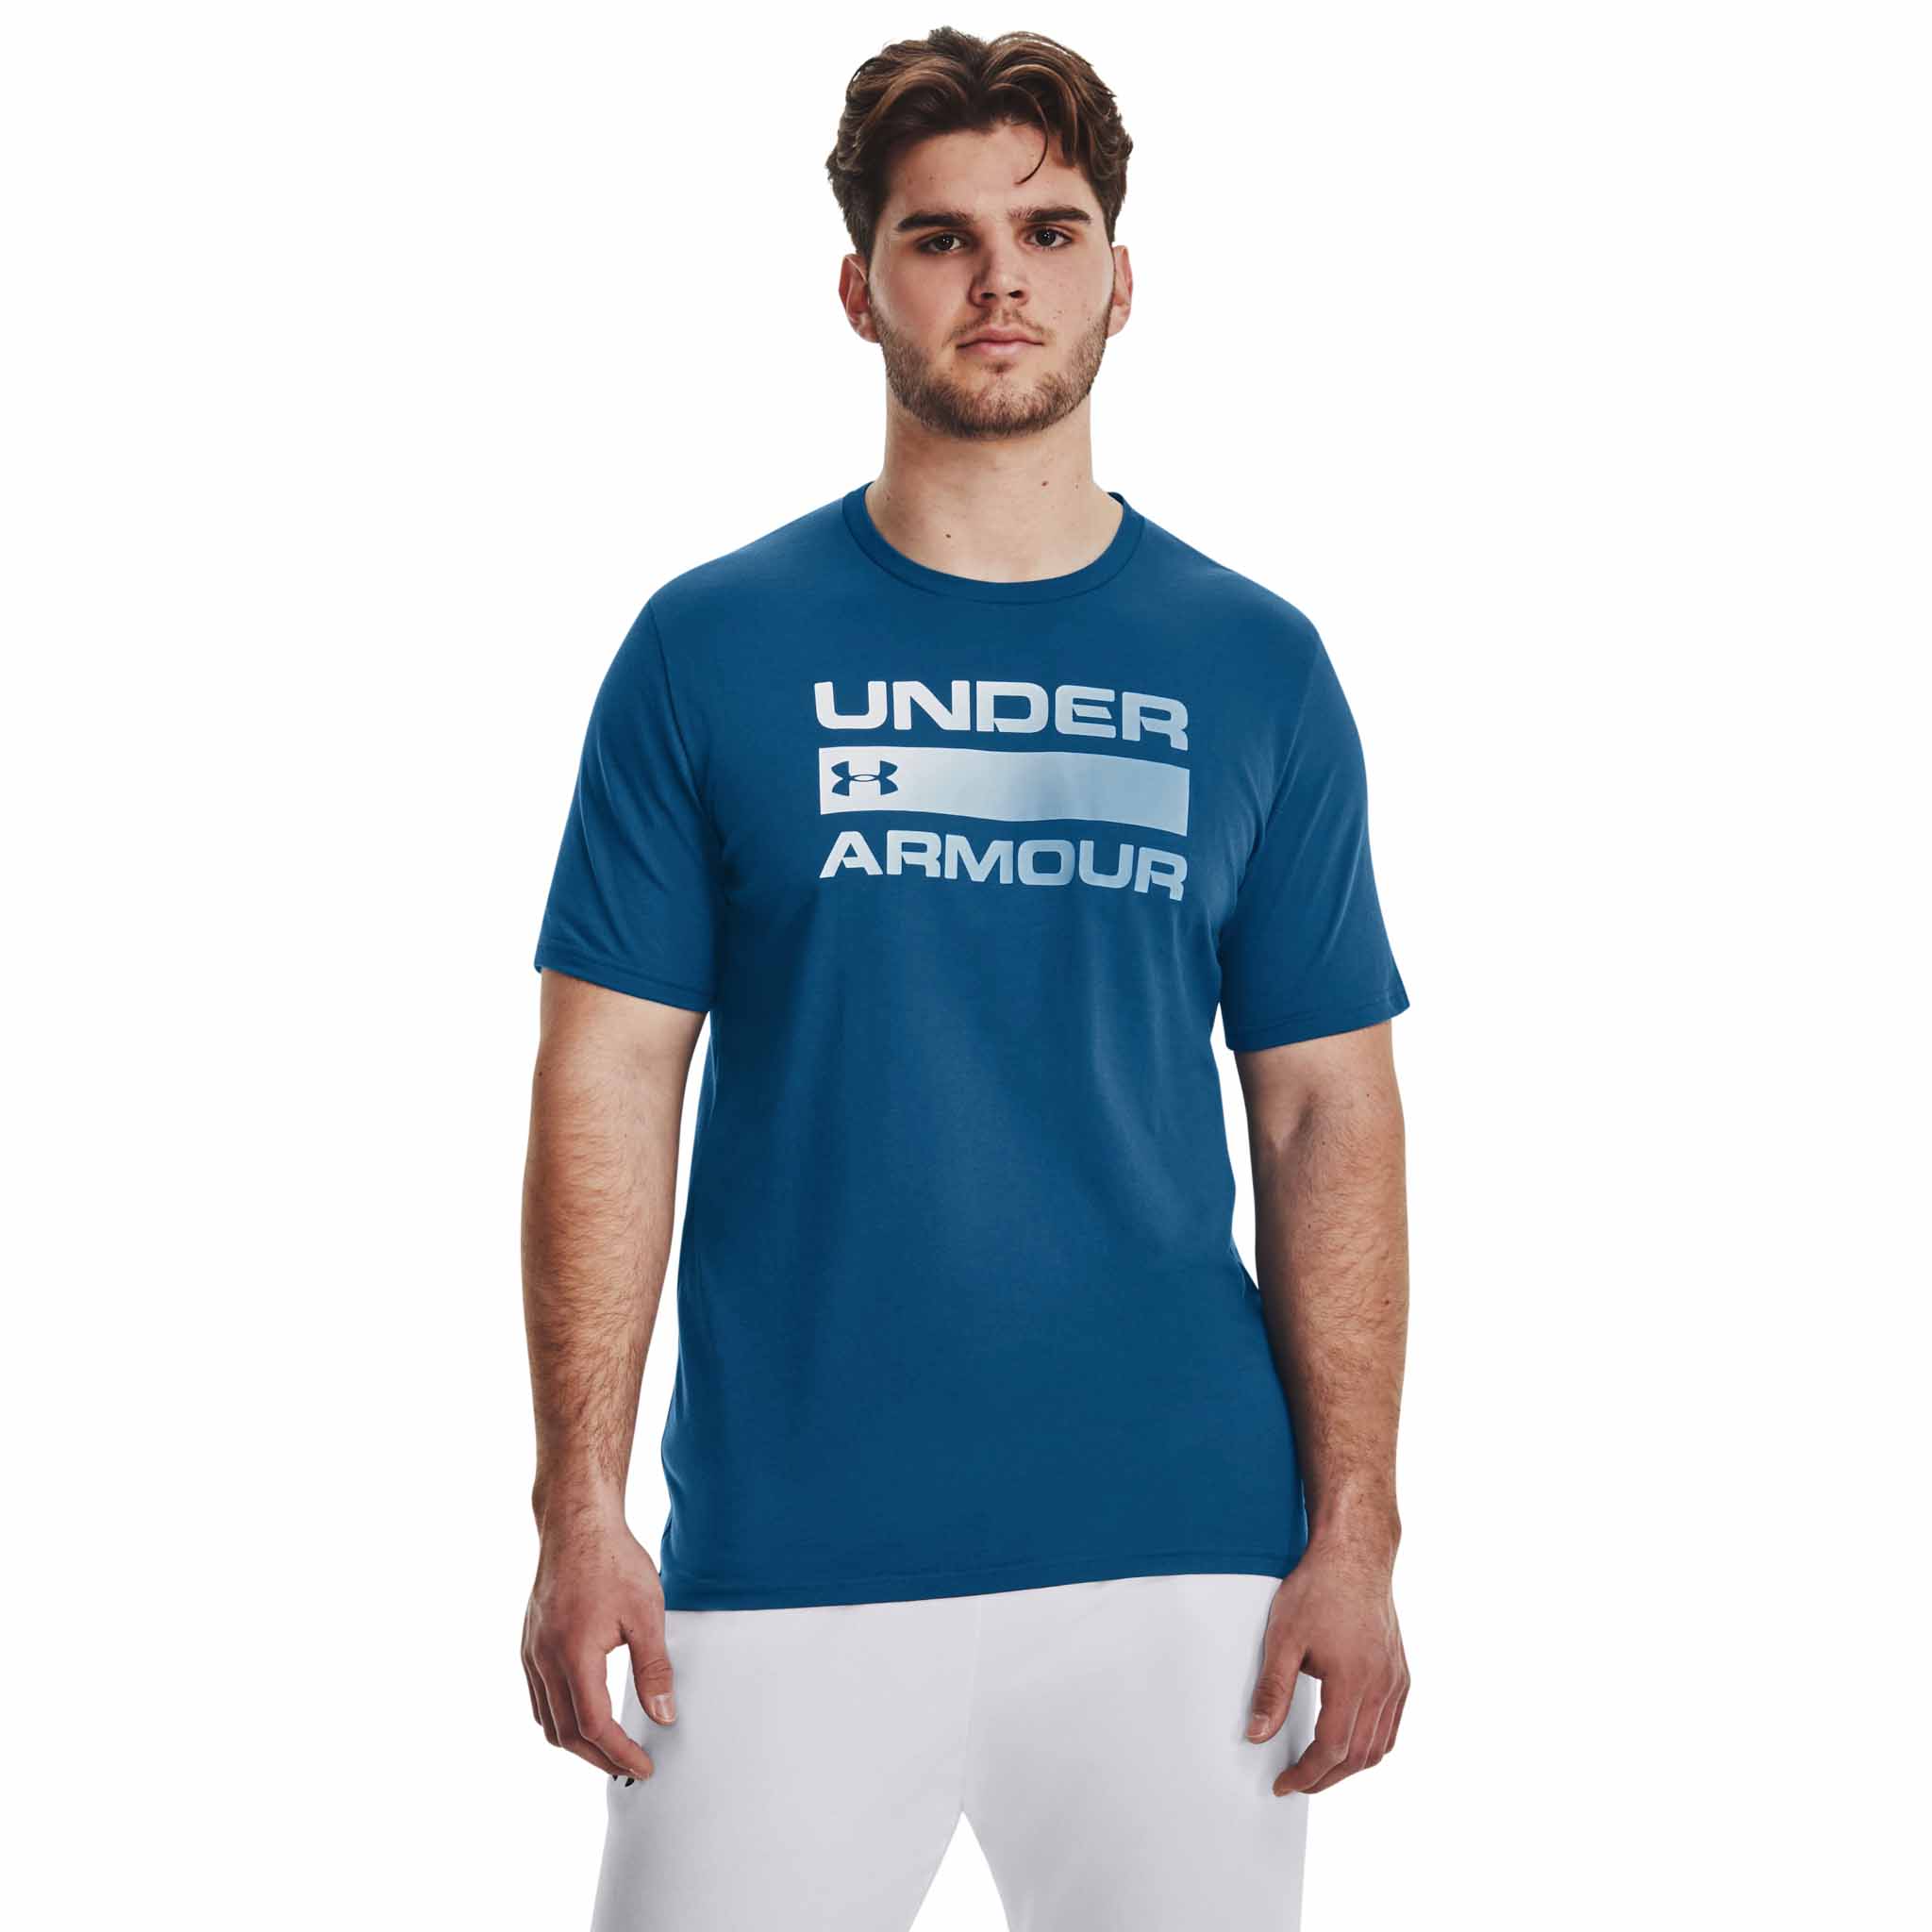 Under Armour Team Issue haut à manches courtes avec inscription homme -  Soccer Sport Fitness